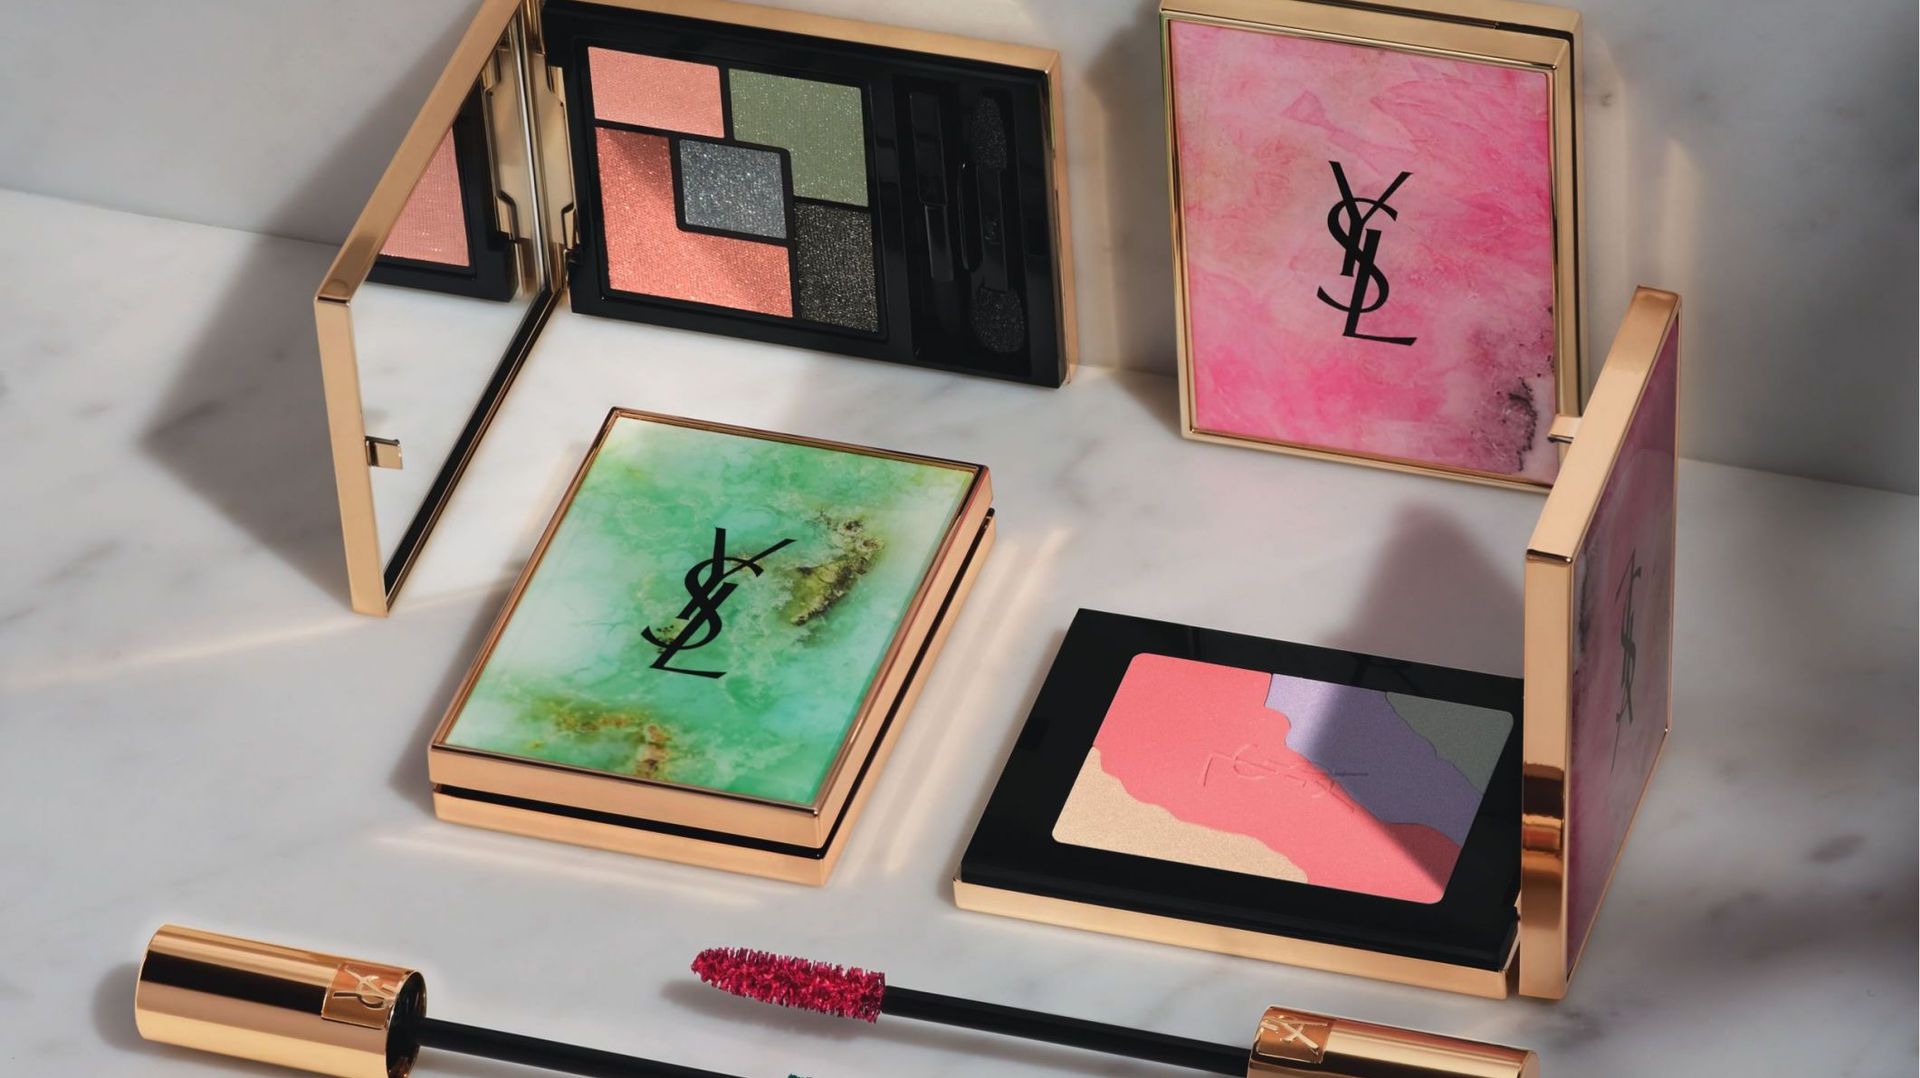 Les deux palettes collector - Couture Palette et Face Palette - de la collection "Boho Stones" d'Yves Saint Laurent, ainsi que les deux nouvelles teintes du "Mascara Volume Effet Faux Cils".
